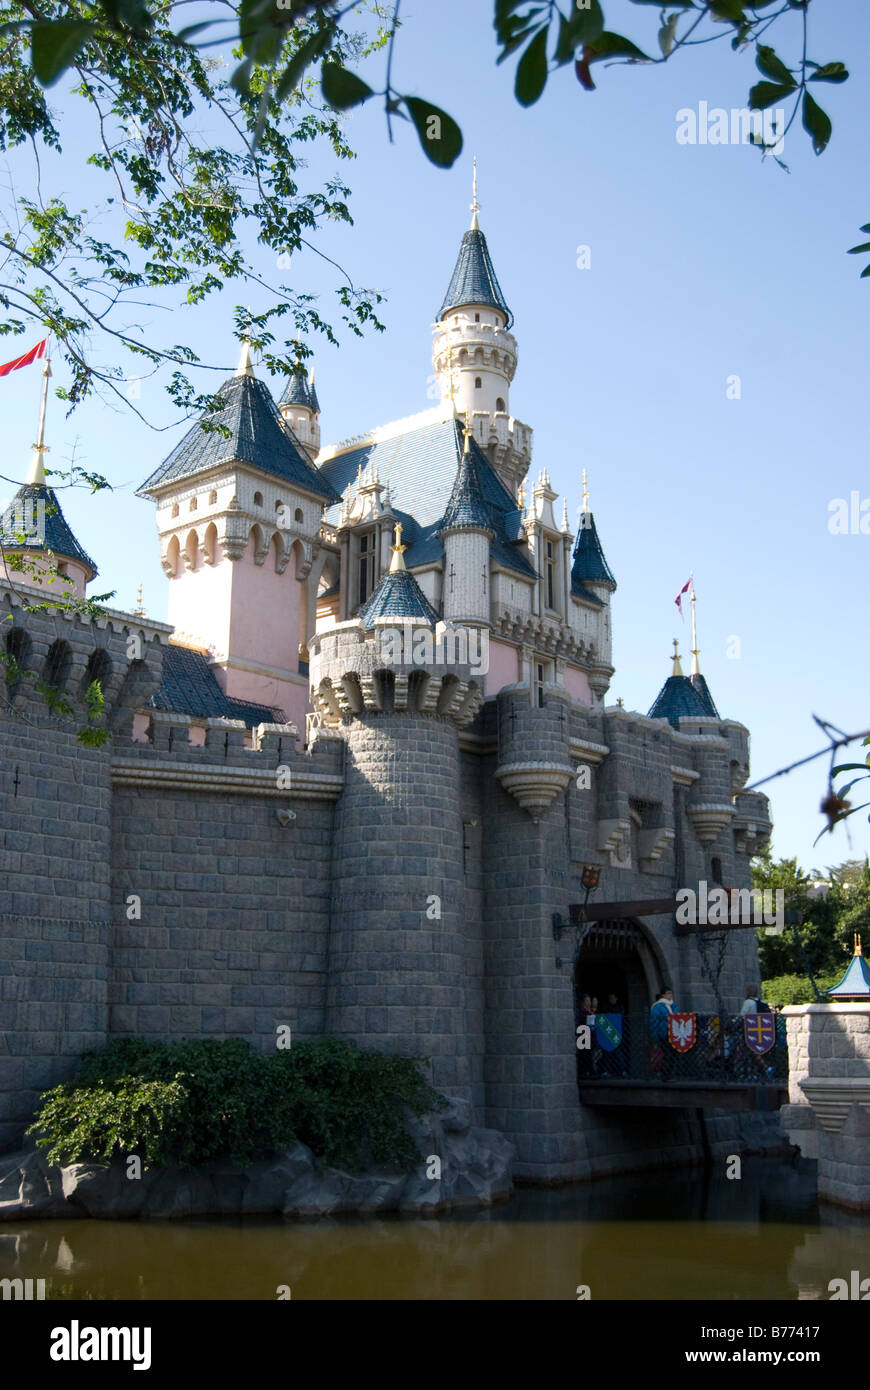 Château de La Belle au bois dormant, Fantasyland, Hong Kong Disneyland Resort, l'île de Lantau, Hong Kong, République populaire de Chine Banque D'Images